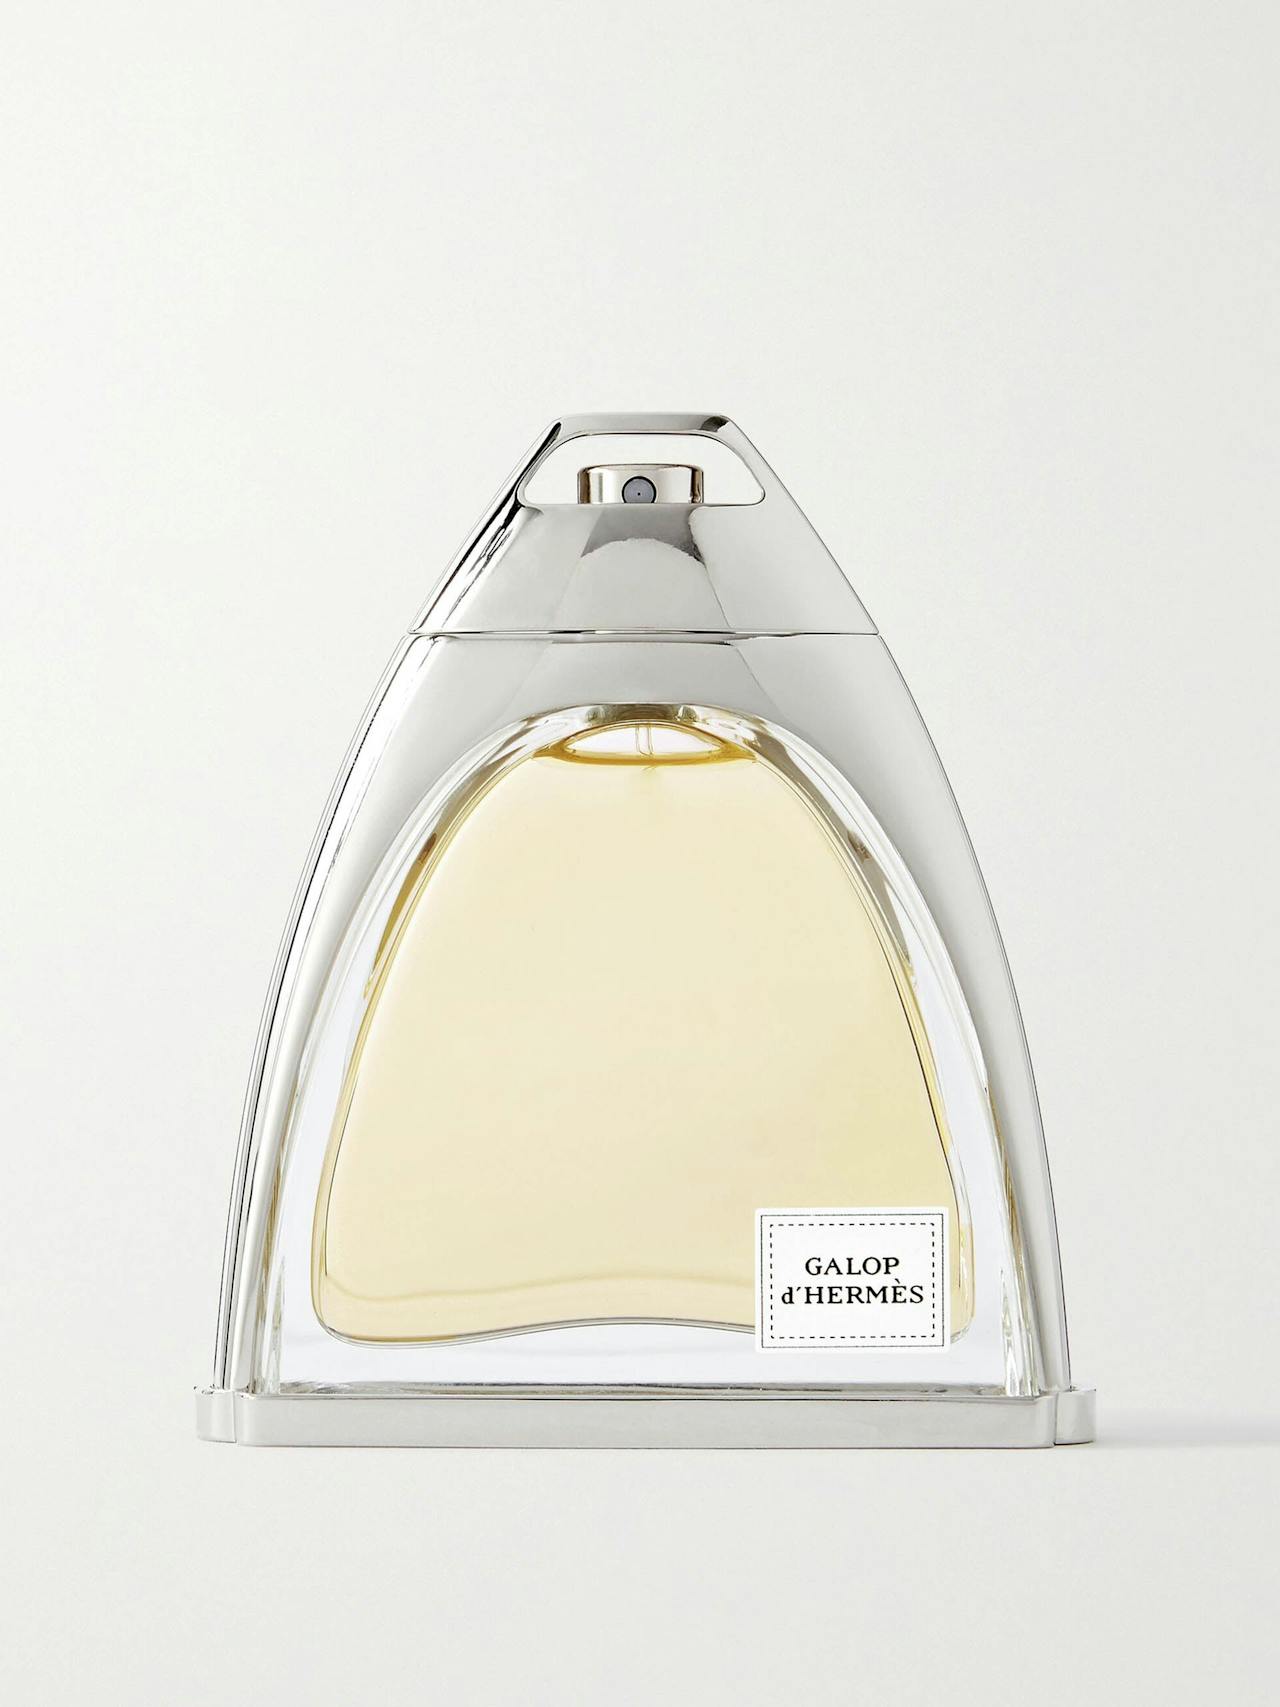 Galop d'Hermès parfum